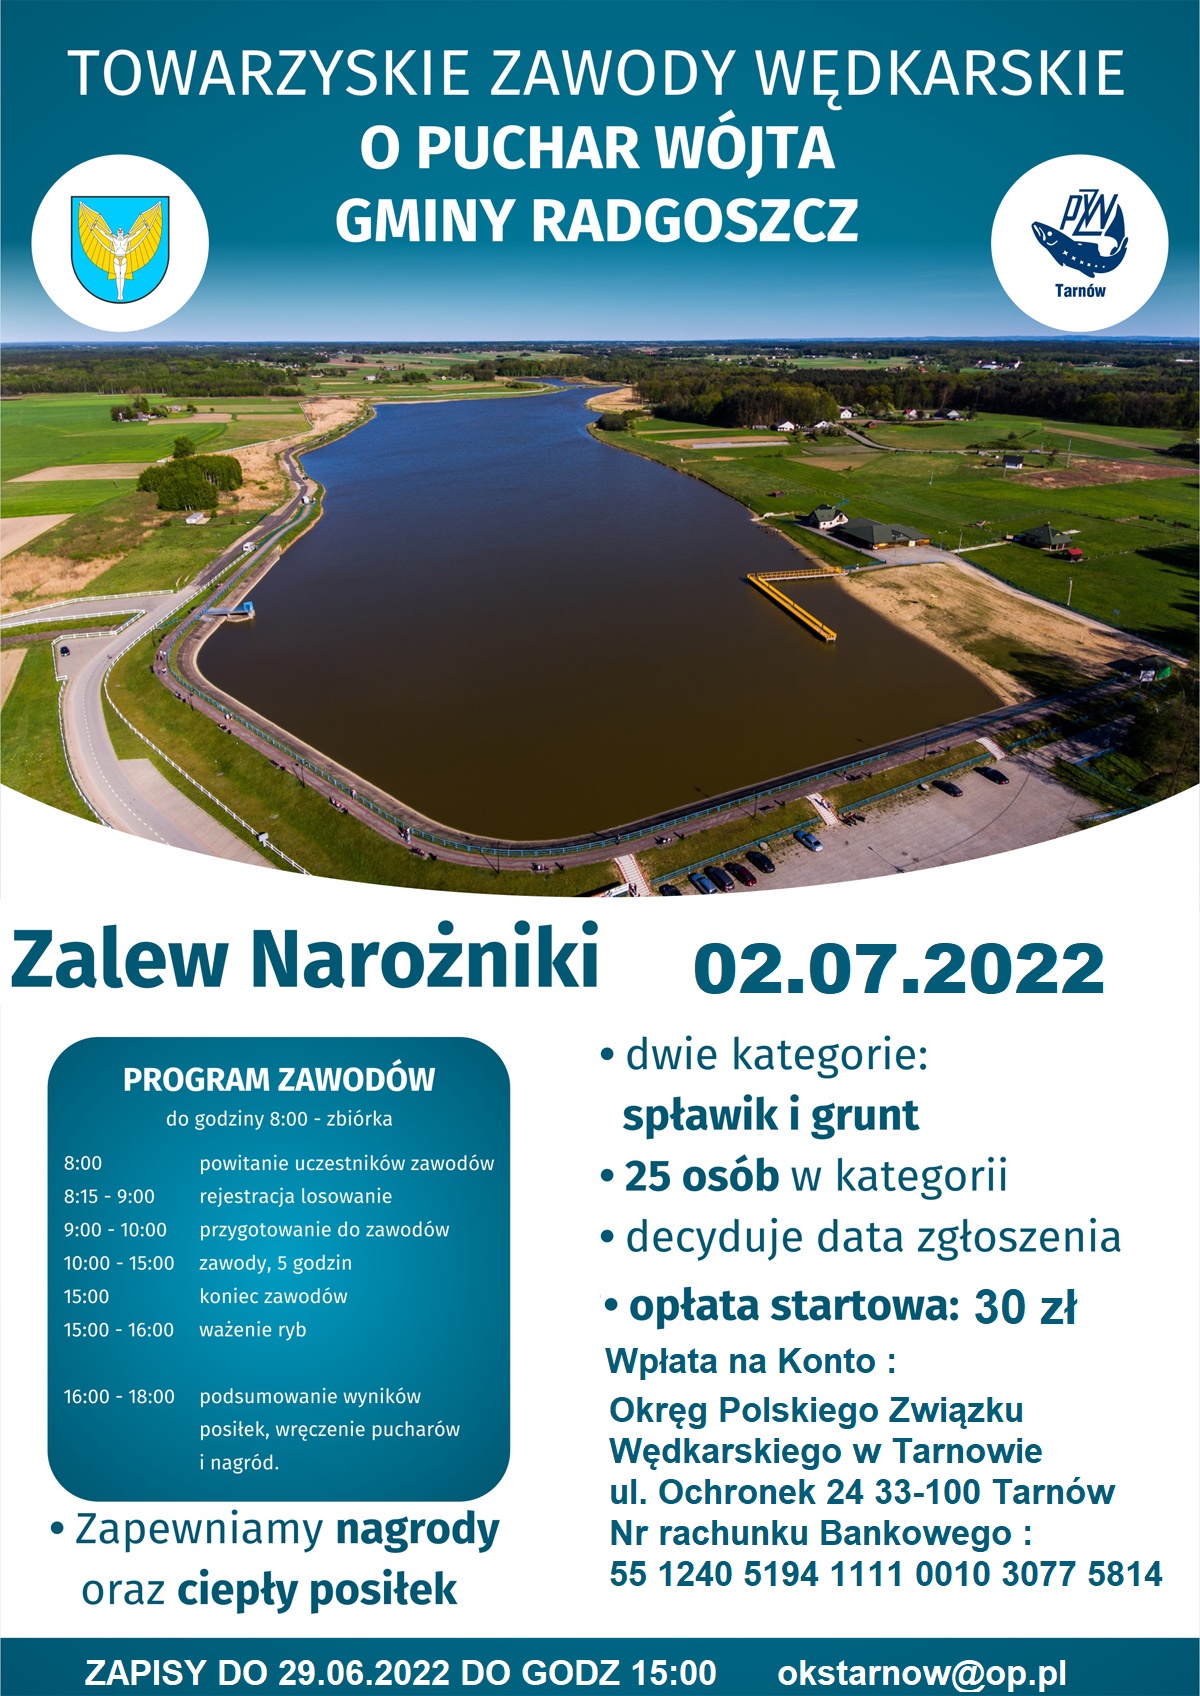 PZW Tarnów zawody o puchar wójta gminy Radgoszcz Narożniki 2022